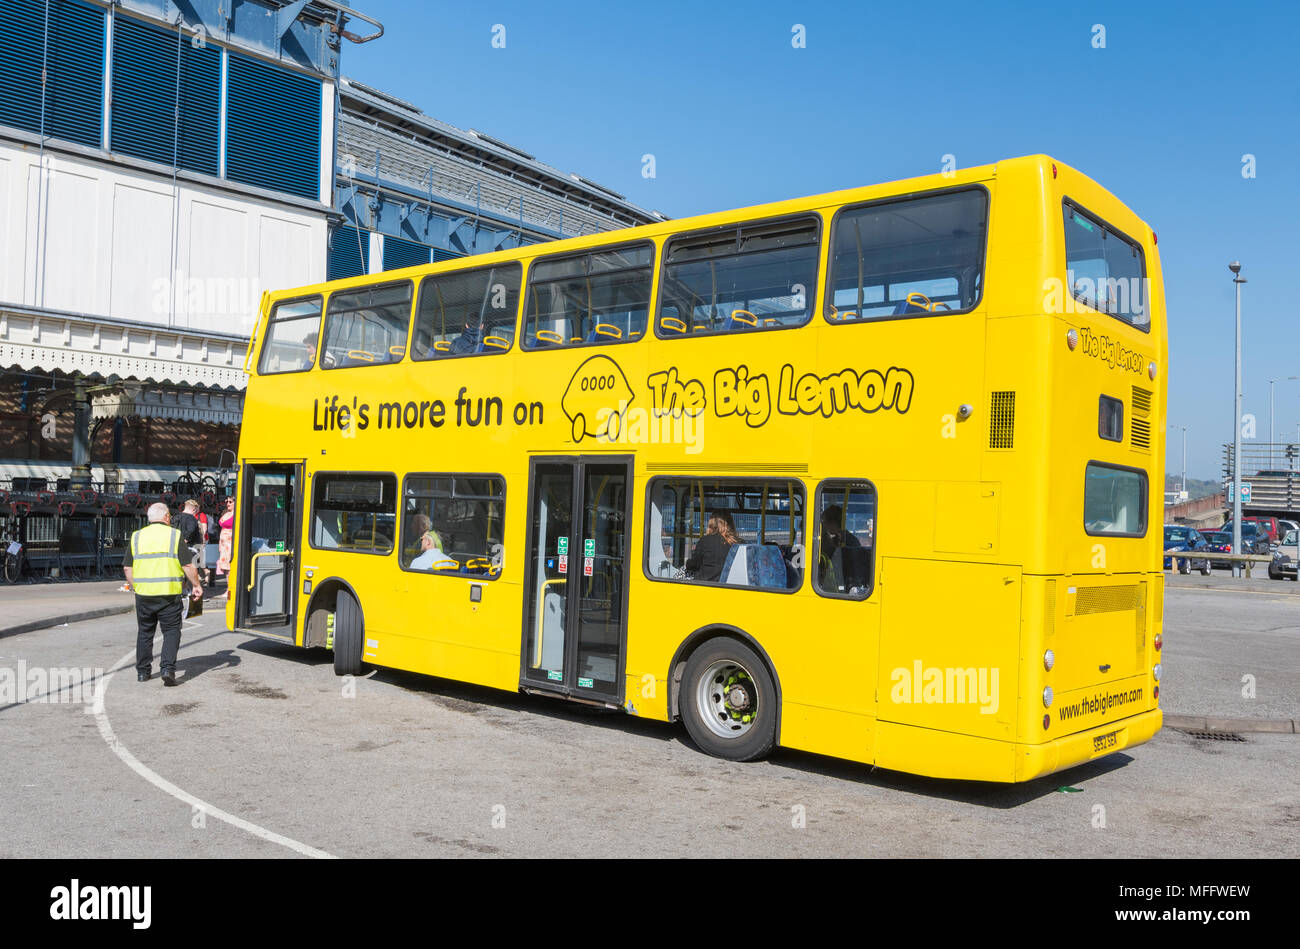 Die grossen Zitrone Bus, einen gelben Bus als Teil der grossen Zitrone Bus Service in Brighton, Brighton & Hove, East Sussex, England, UK. Stockfoto